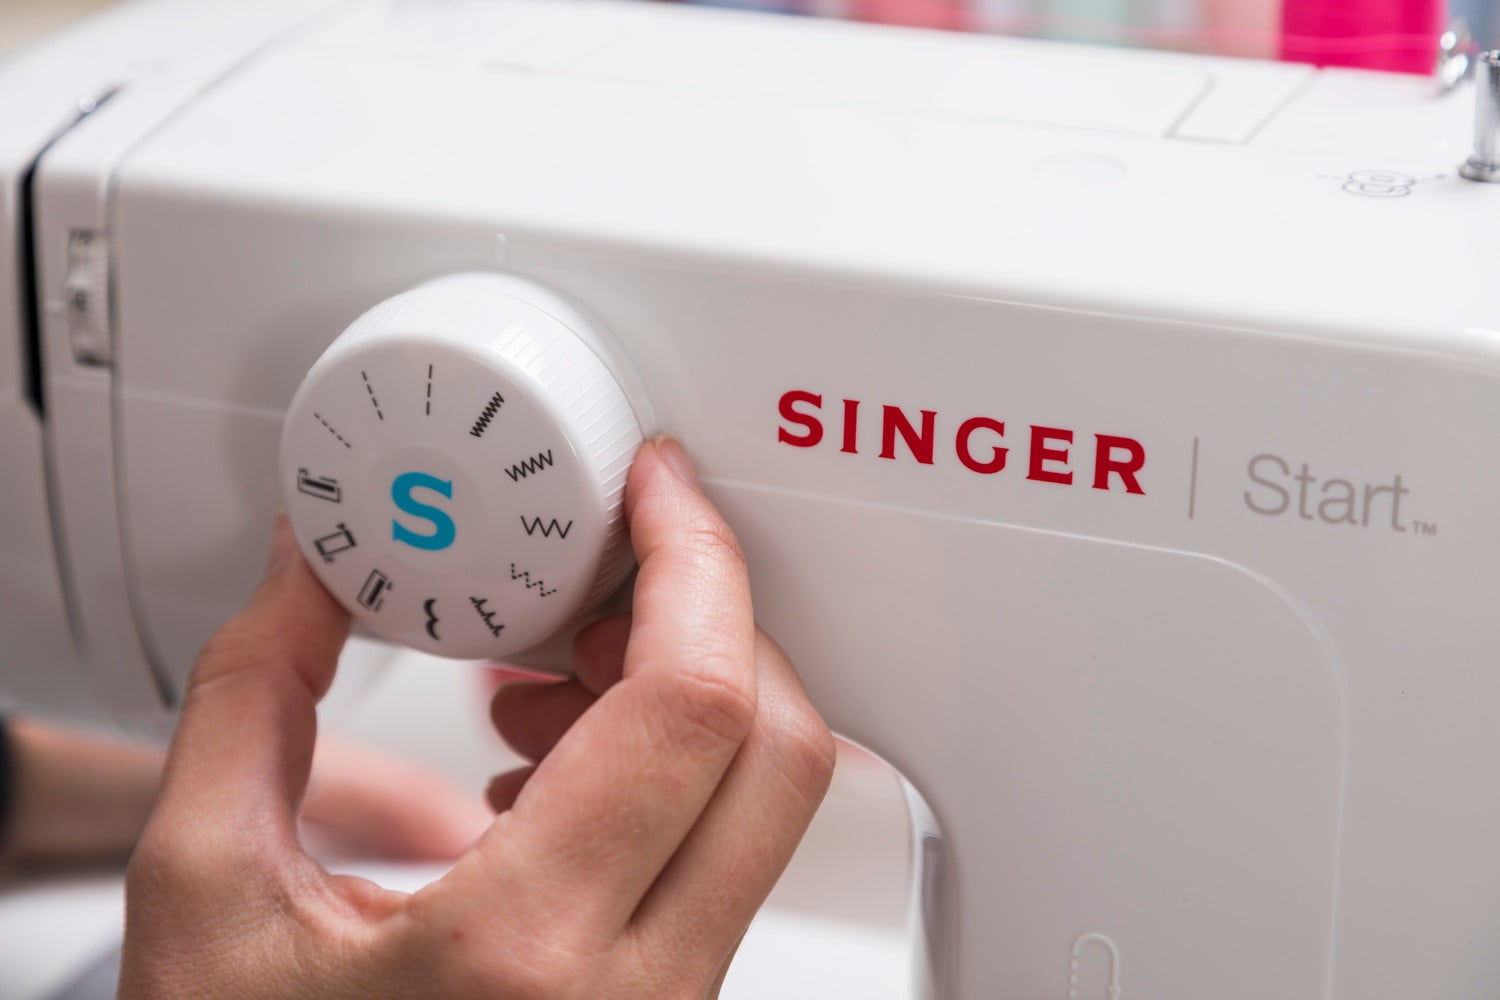 Singer START 1304 Sewing Machine + $65 accessories